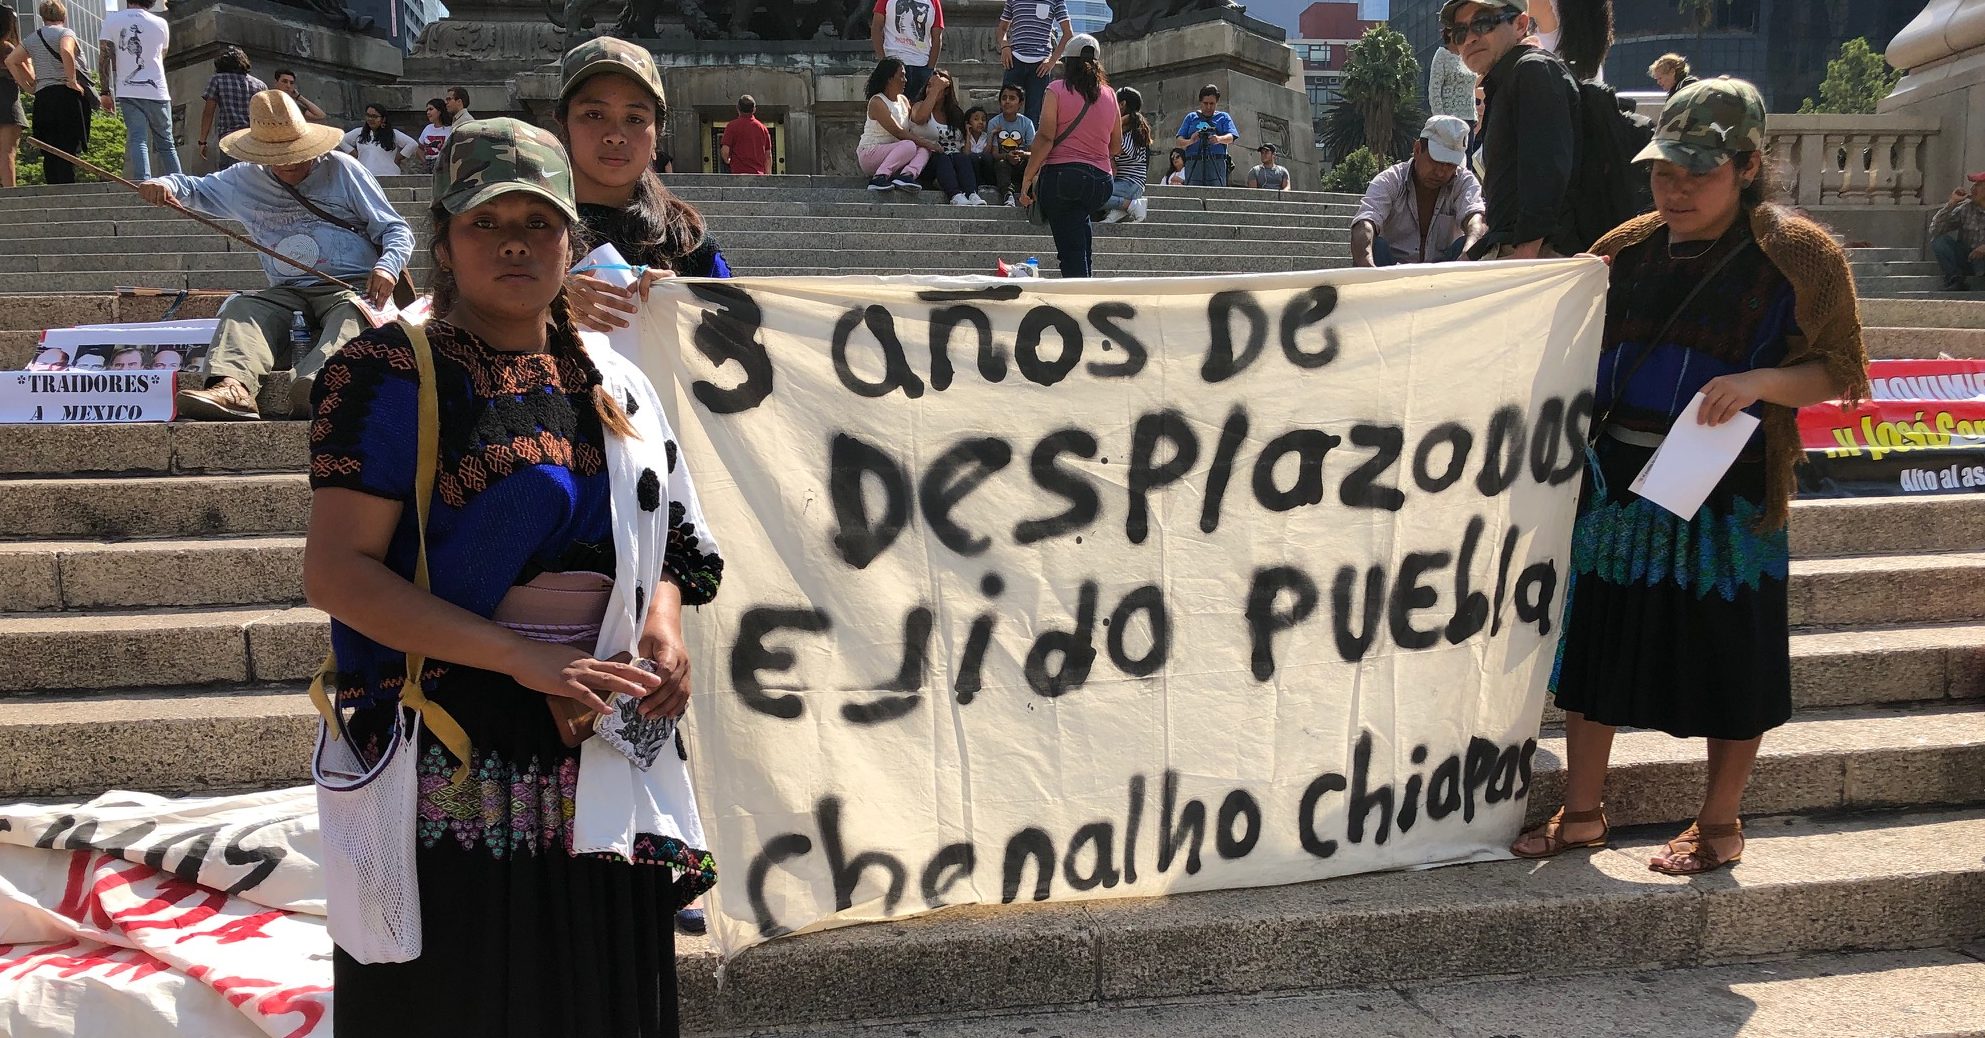 Desplazados de Chenalhó exigen a AMLO justicia para volver a casa